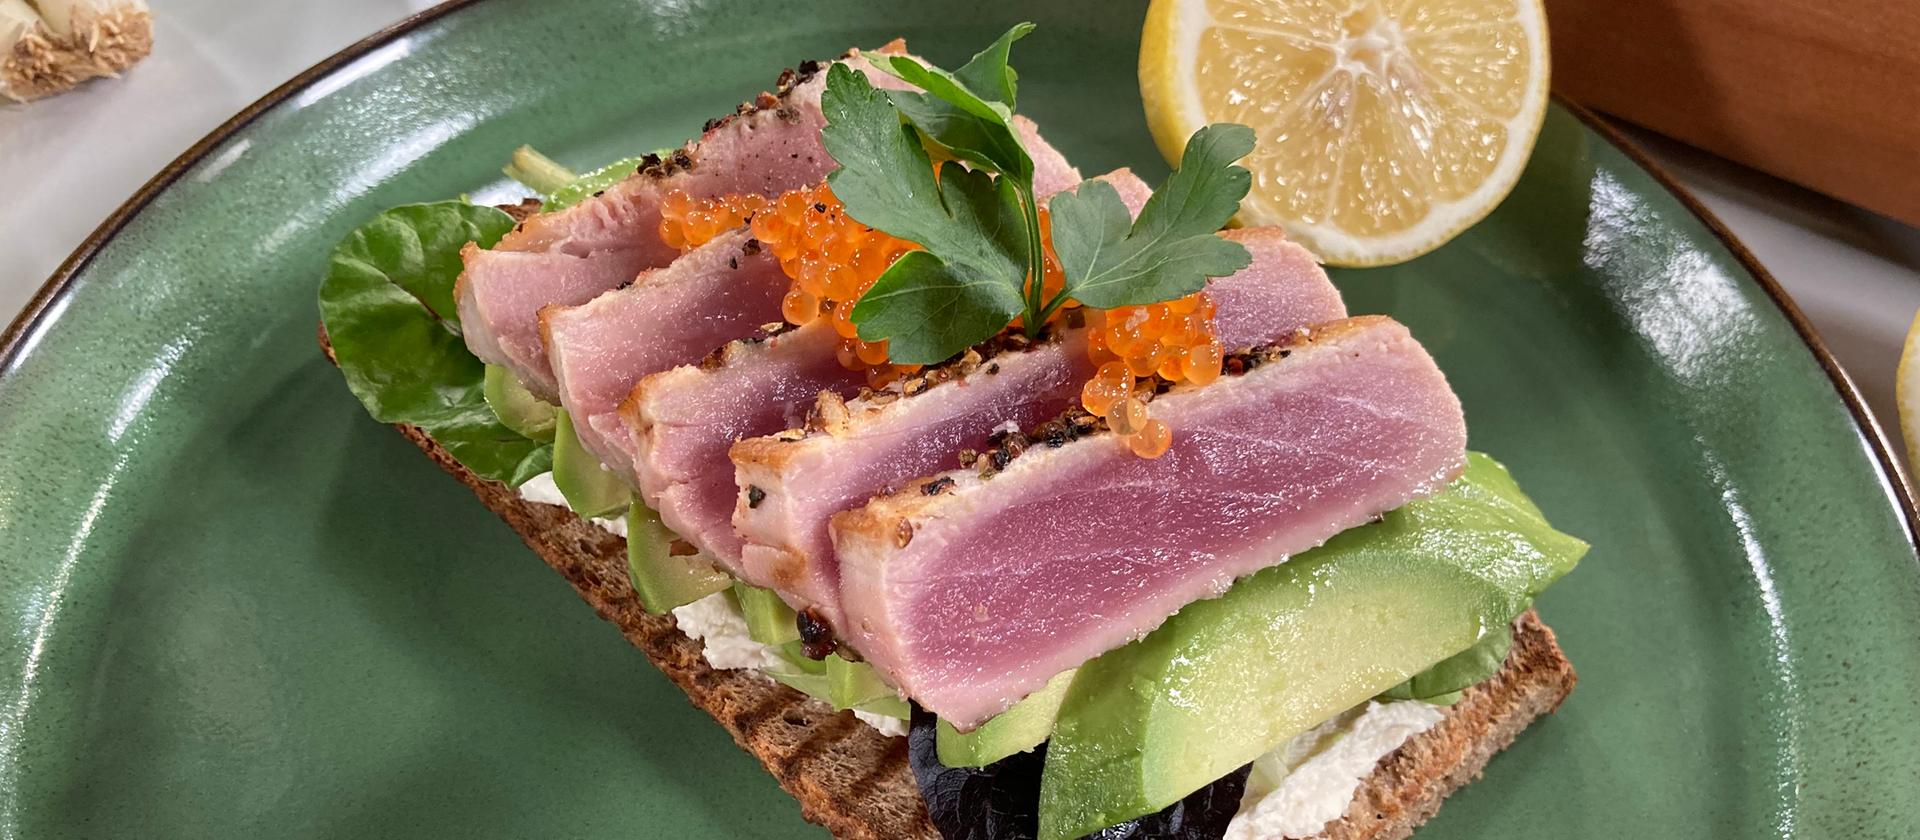 Rezept: Thunfisch mit Avocado auf Röstbrot | hr-fernsehen.de | Rezepte